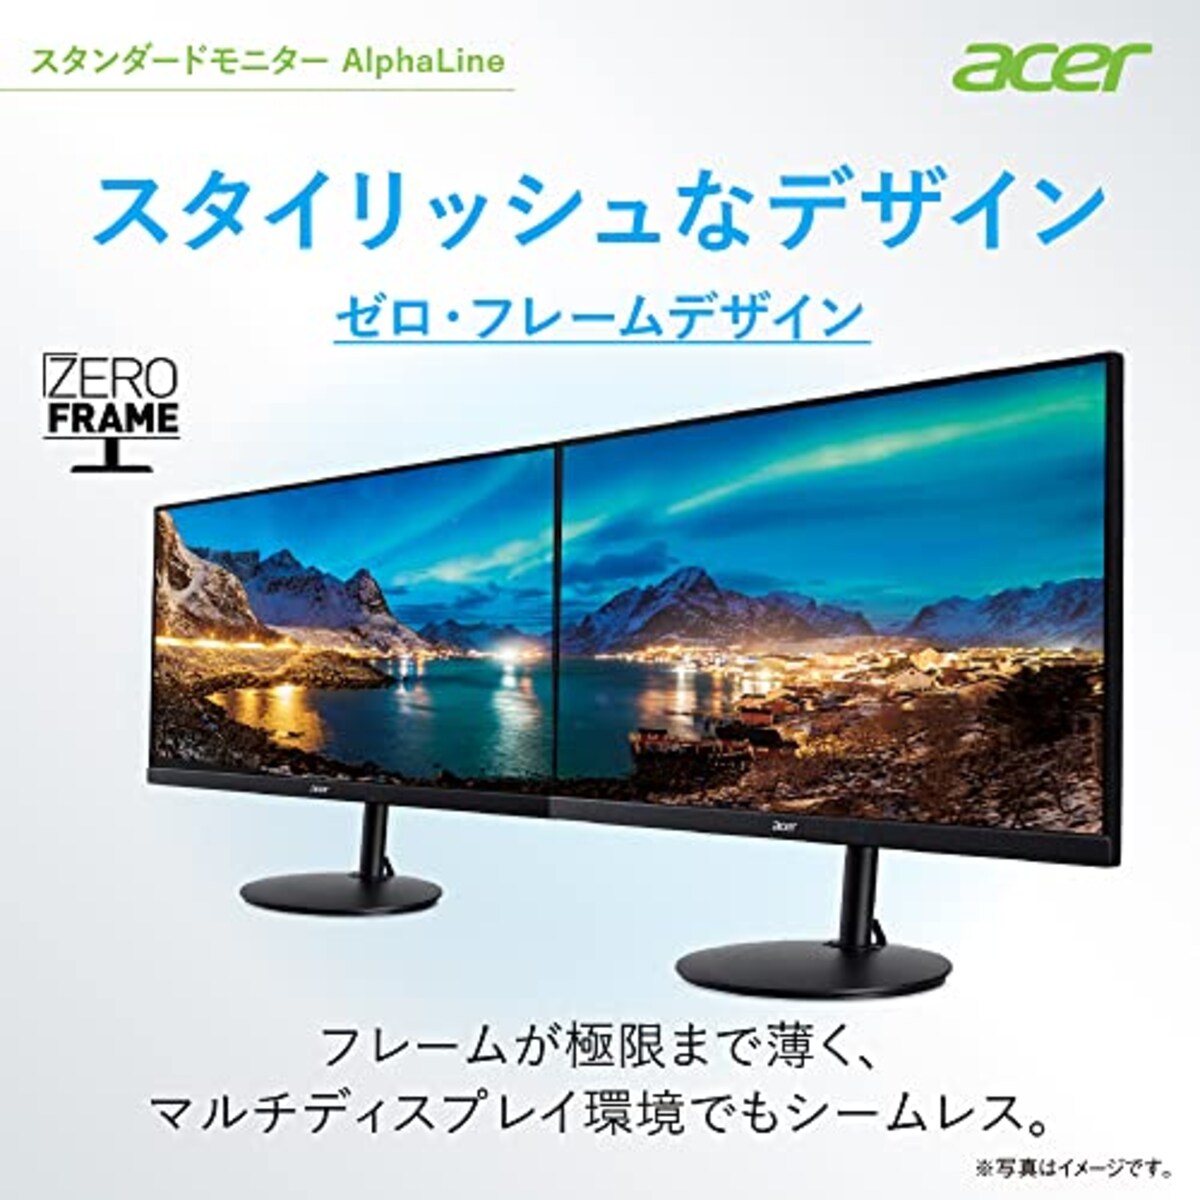  Acer モニター AlphaLine CBA242YAbmirx 23.8インチ VA 非光沢 フルHD 75Hz/1ms (VRB)HDMI ミニD-Sub 15 VESAマウント対応 スピーカー内蔵 高さ調整 チルト スイベル ピボッド機能 広い視野角178° フリッカーレス ブルーライト軽減 フレームレスデザイン画像4 